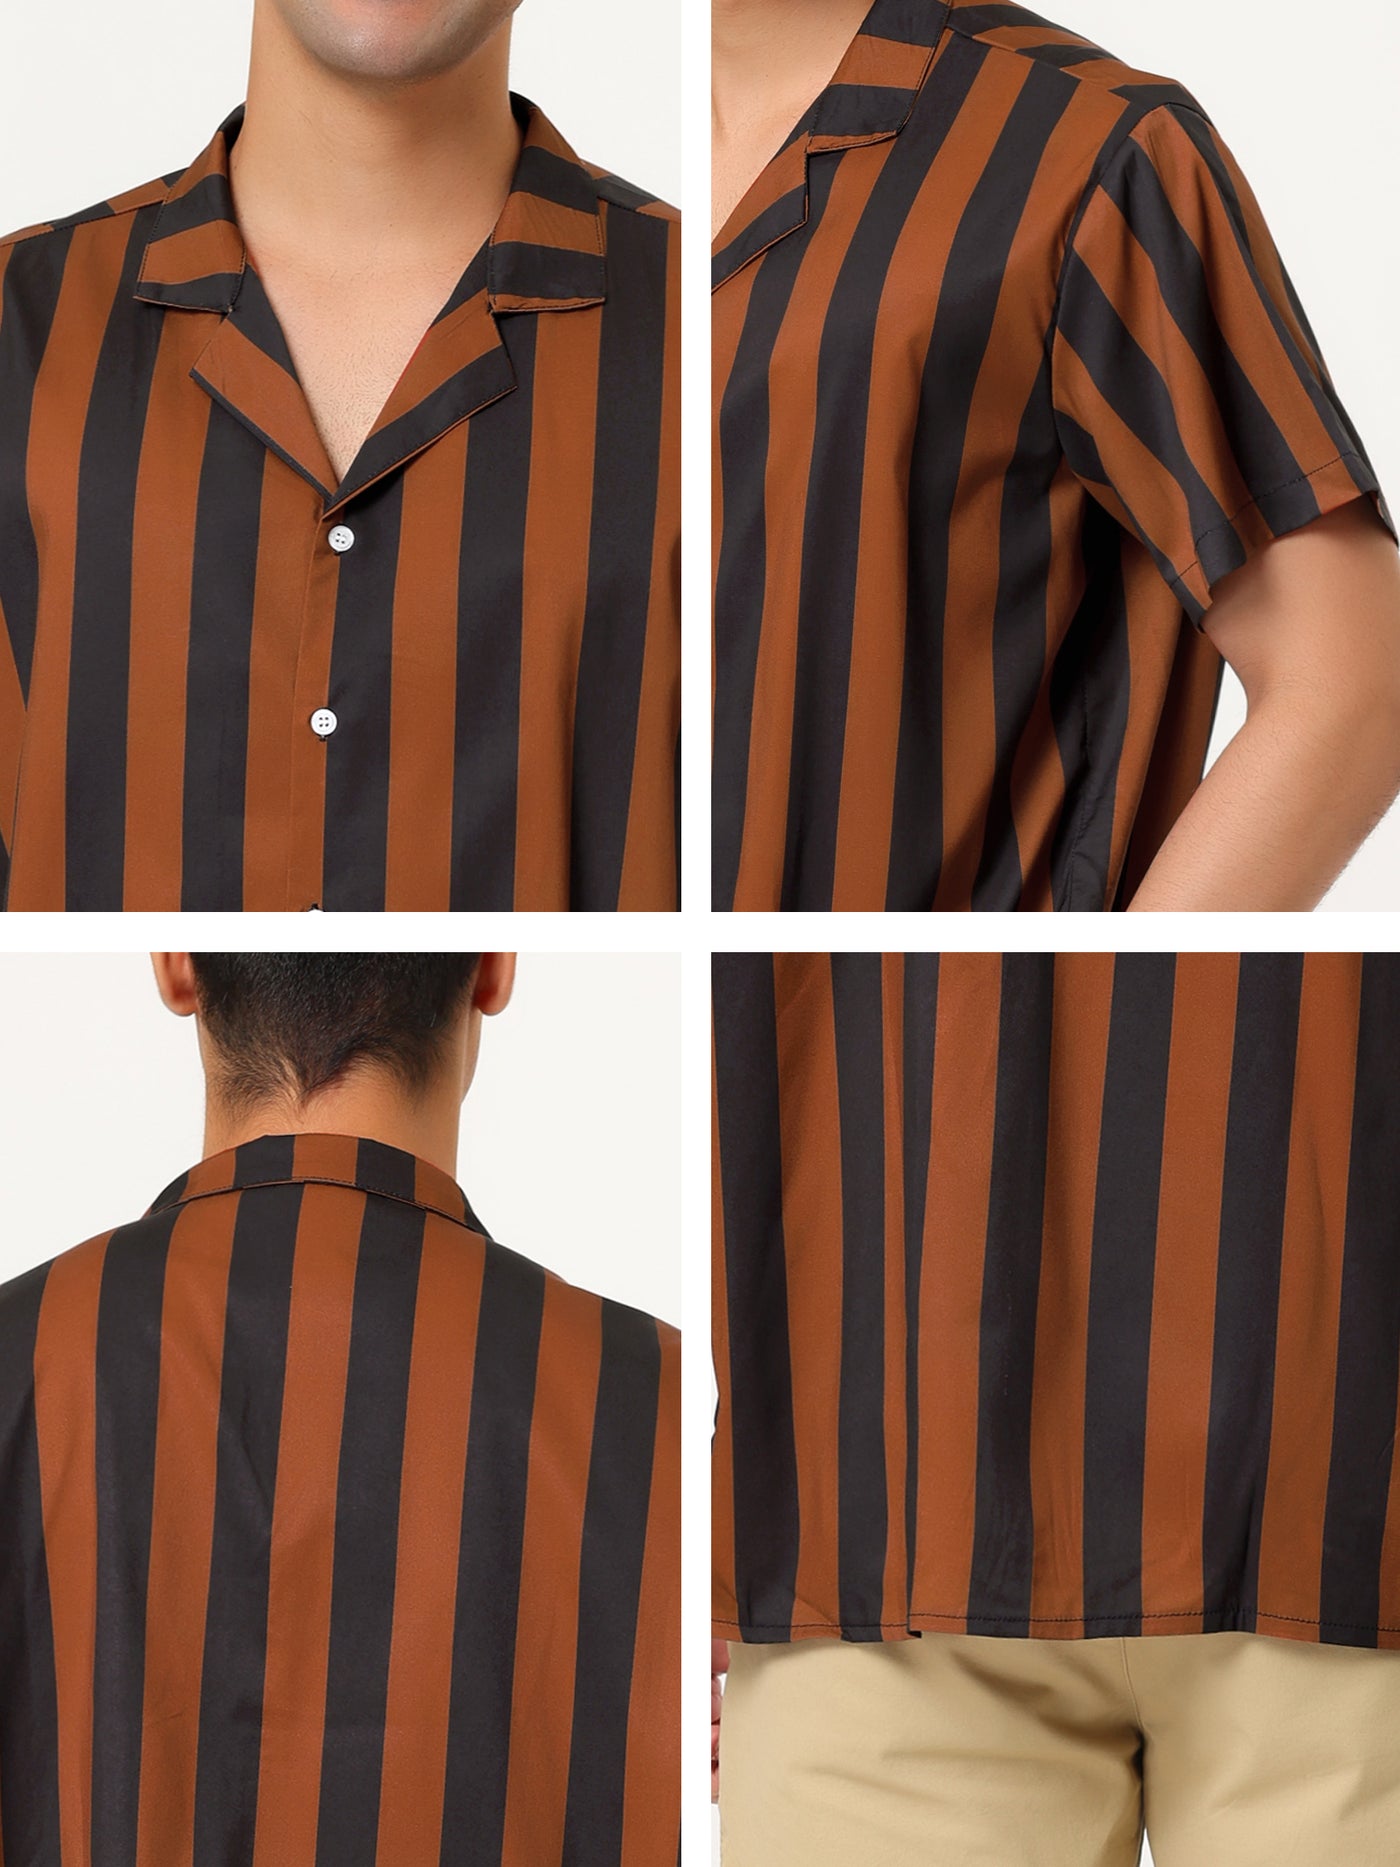 Bublédon Colorful Vertical Stripe Short Sleeve Lapel Button Shirt